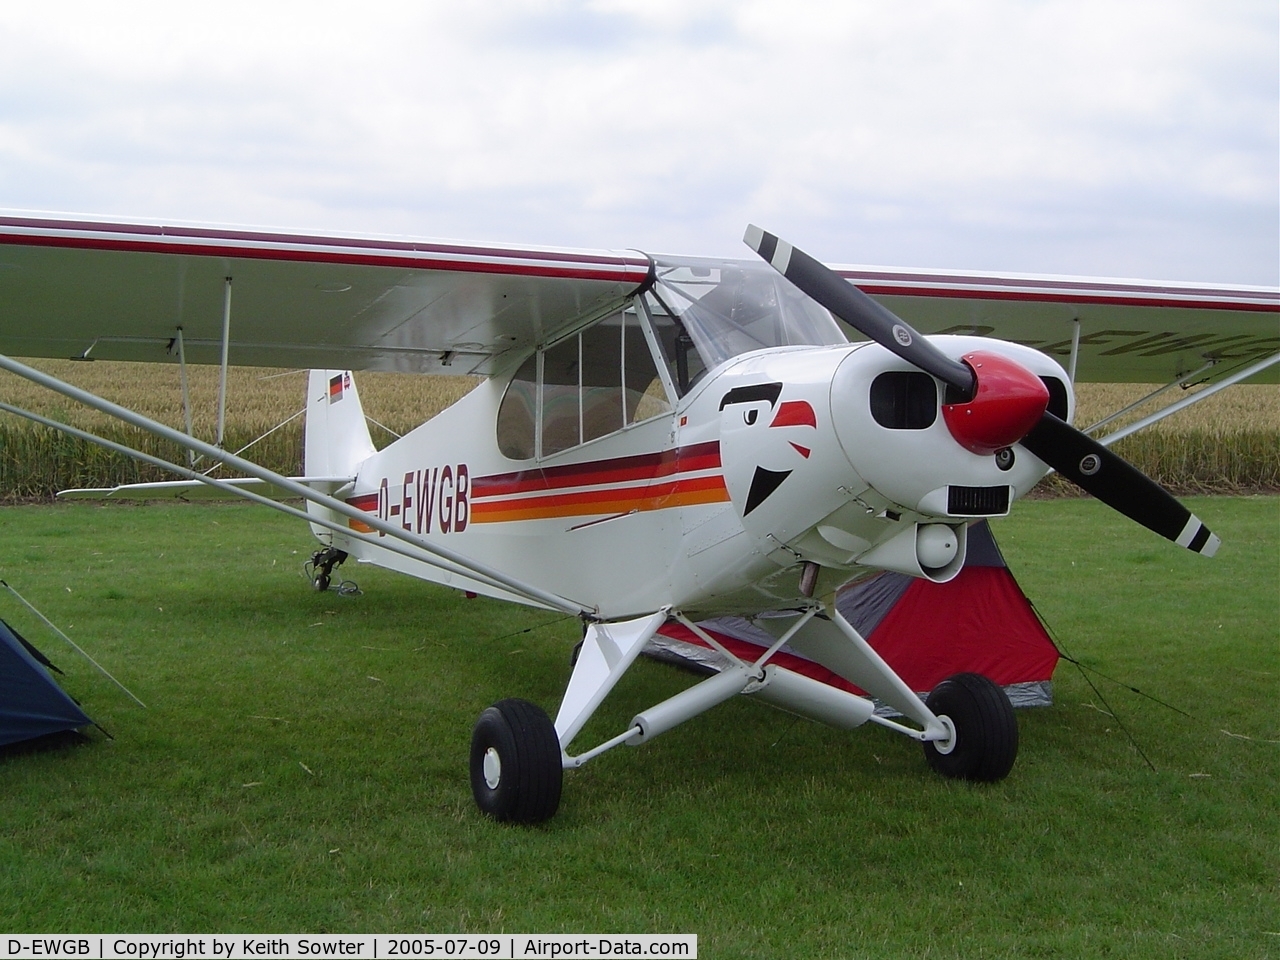 D-EWGB, 1960 Piper PA-18-150 Super Cub Super Cub C/N 18-7442, Flying legends visitor